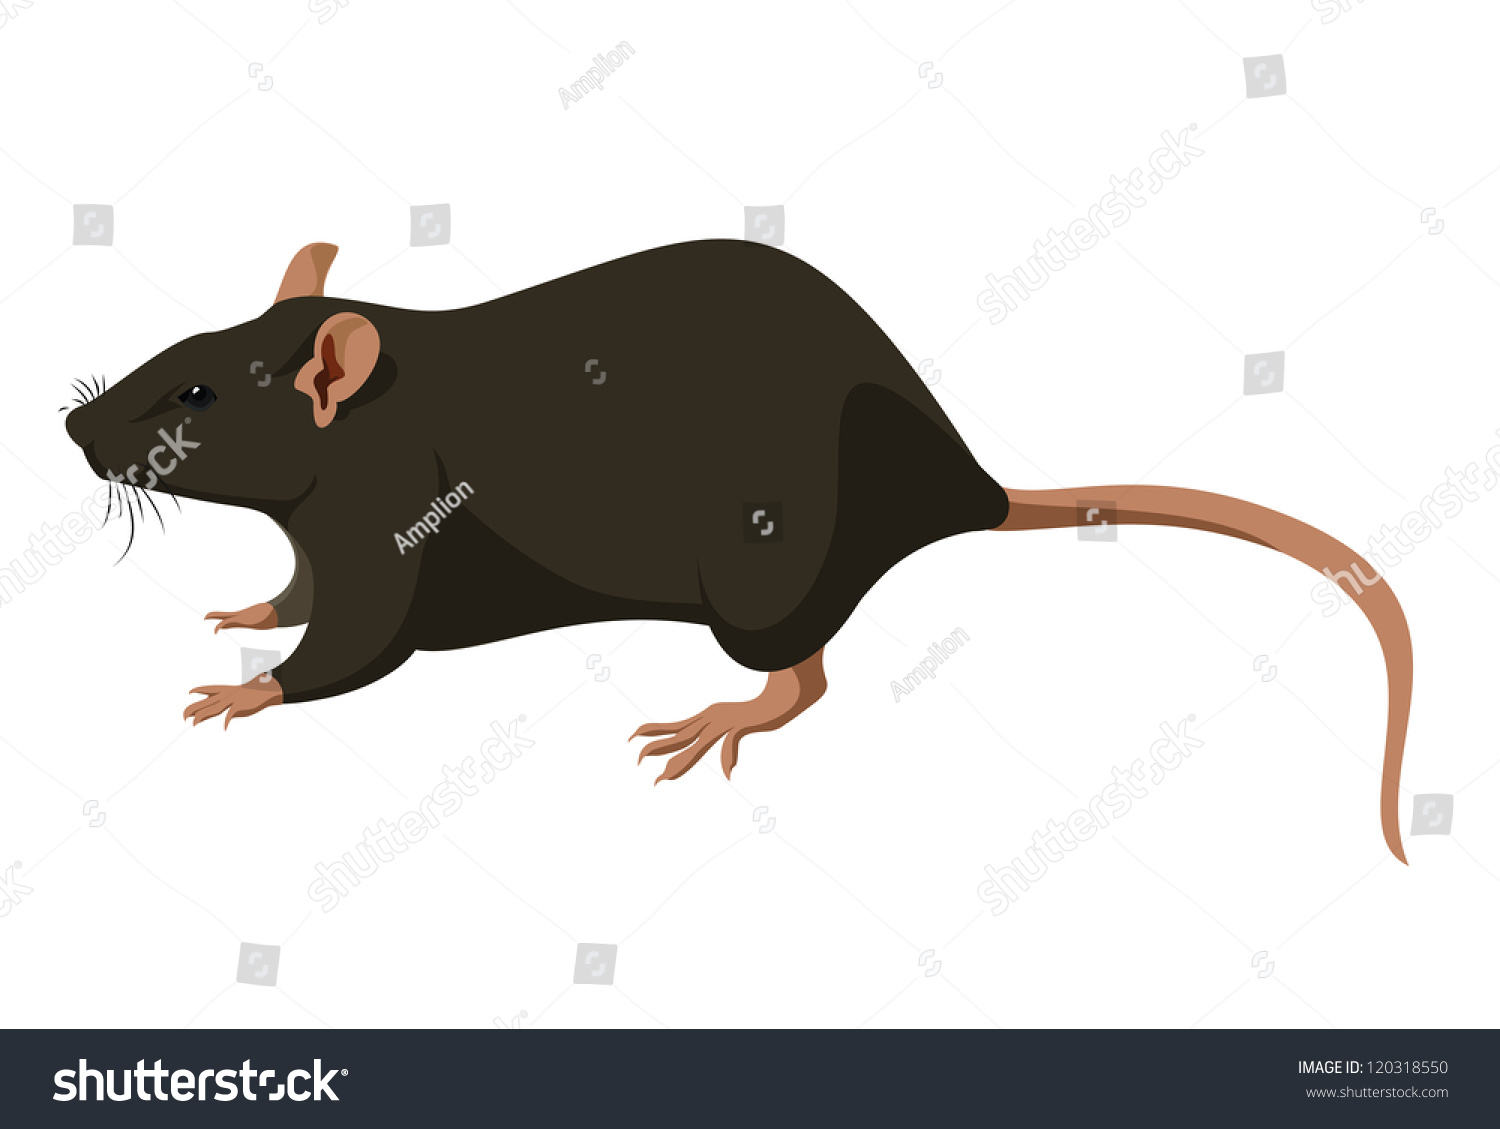 Rat Stock Vector Illustration 120318550 : Shutterstock